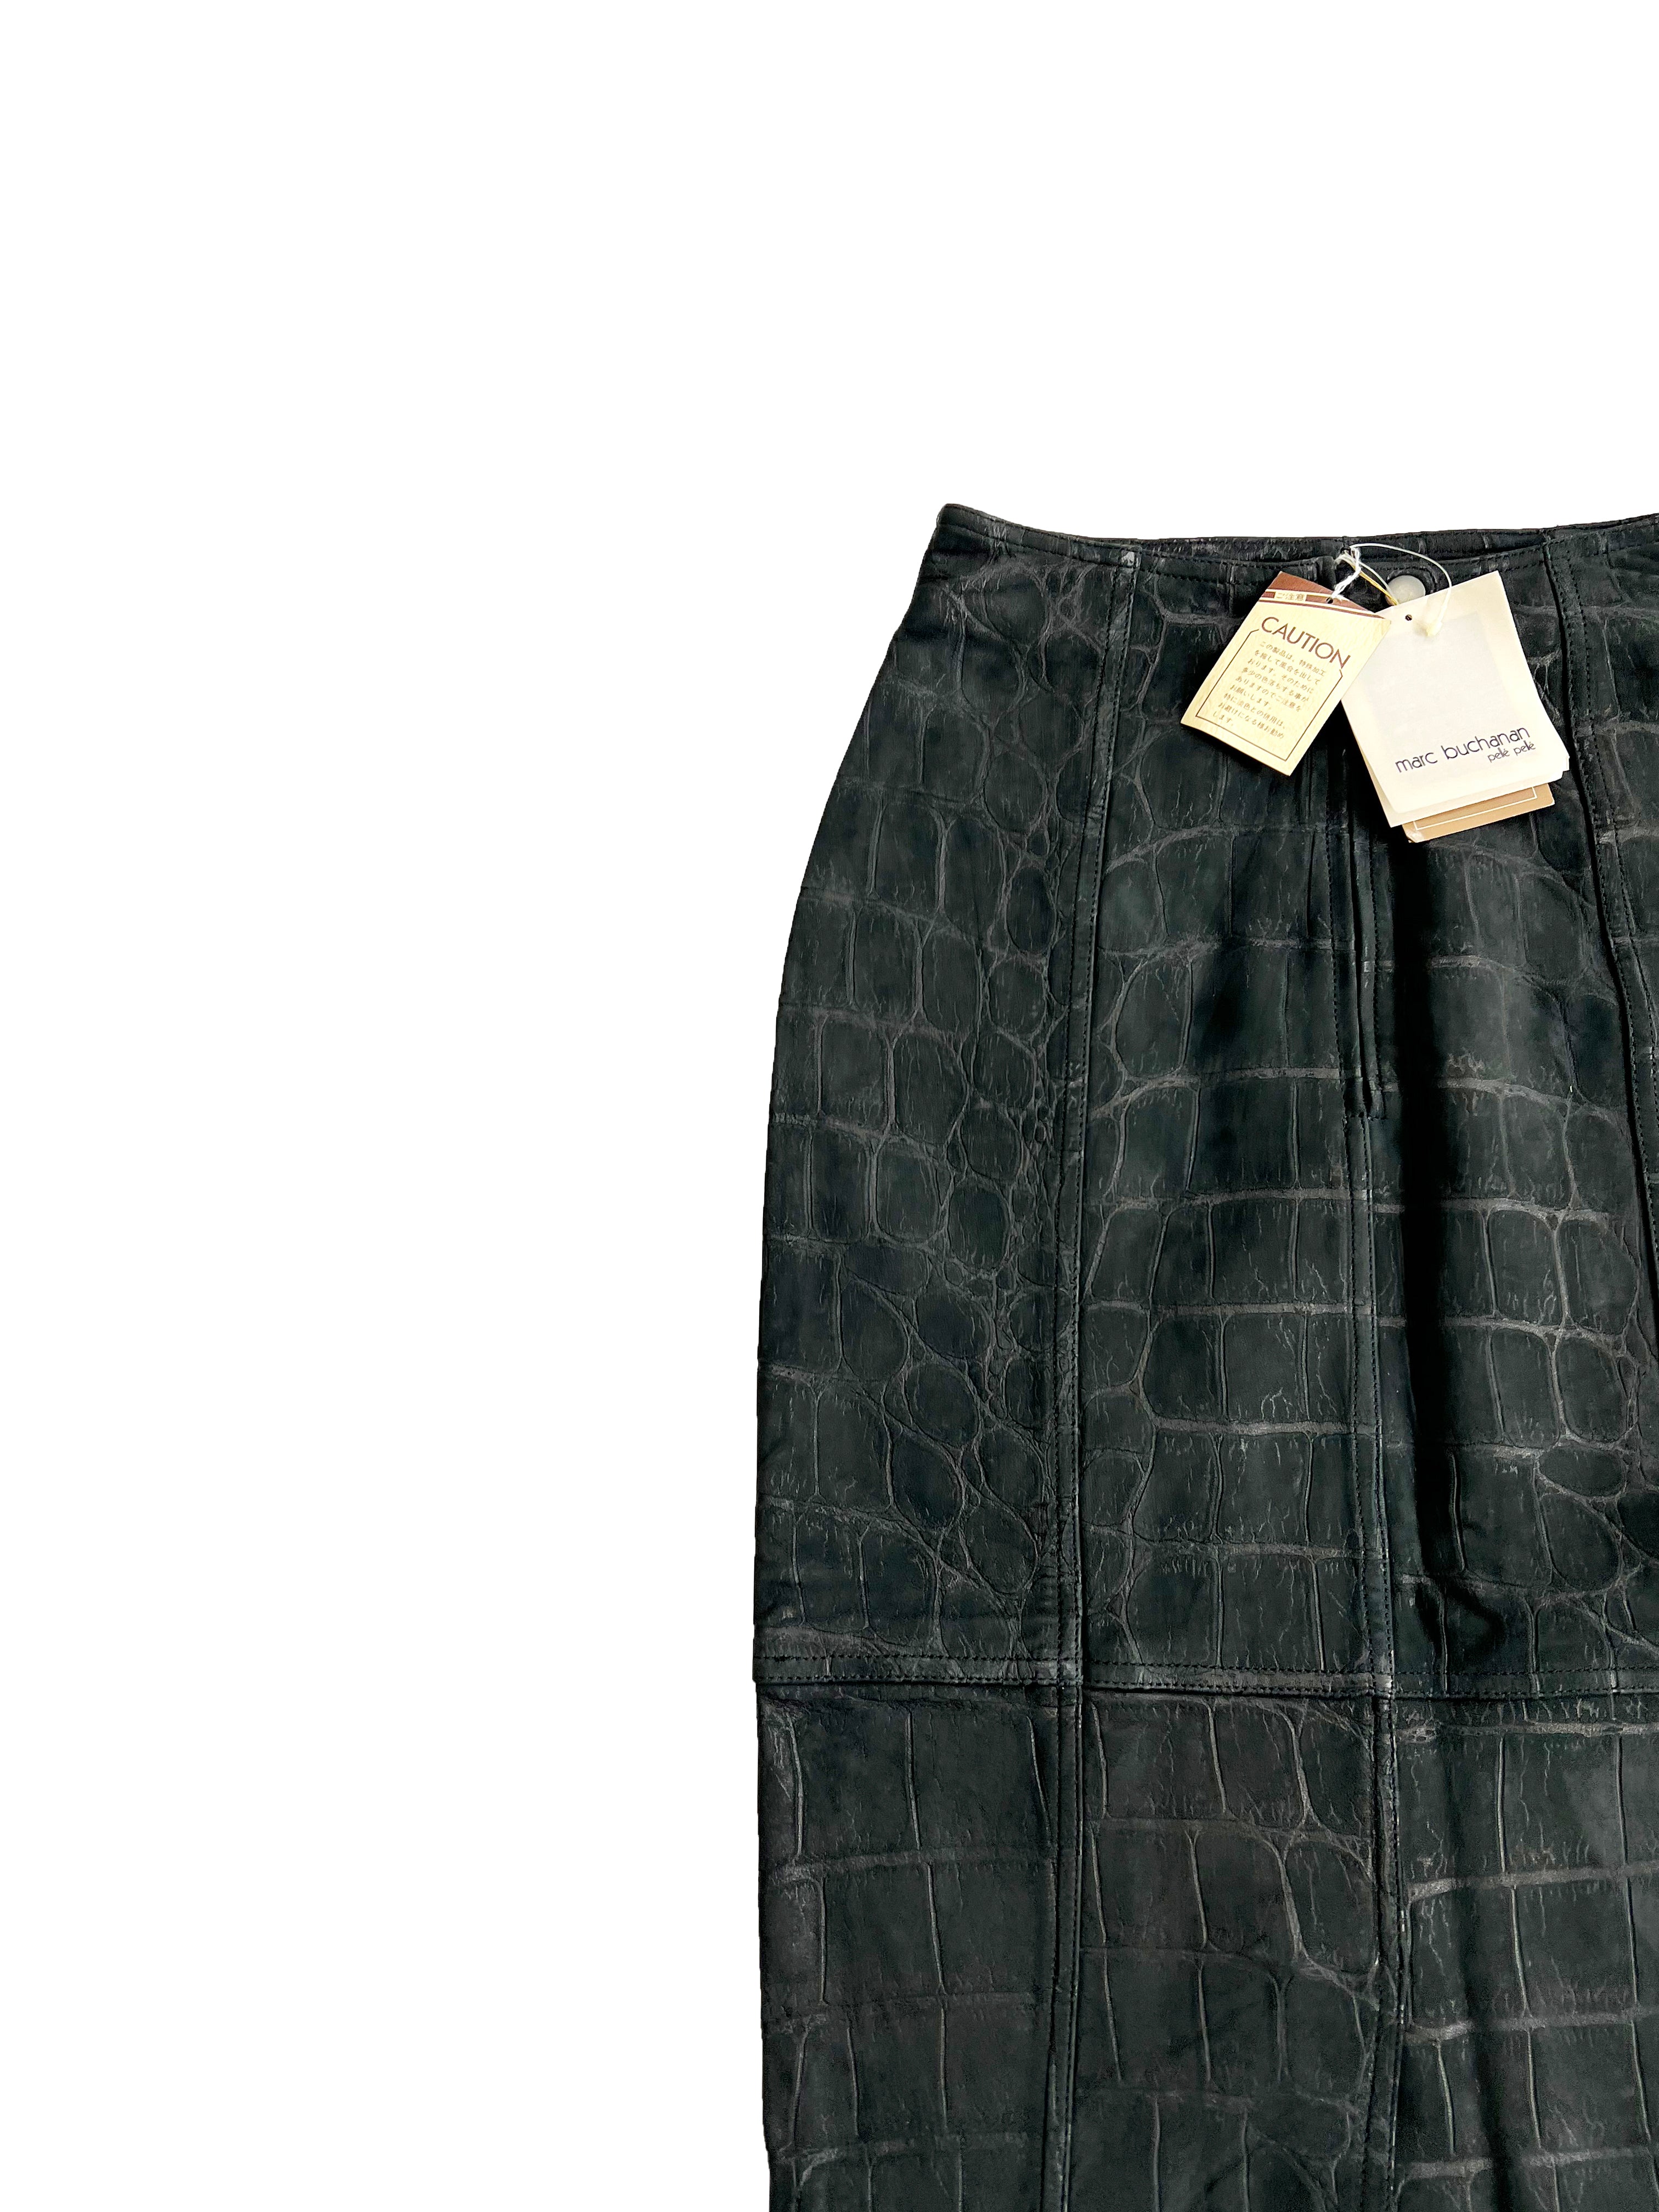 Pelle Pelle Leather Crocodile Print Skirt BNWT 90's